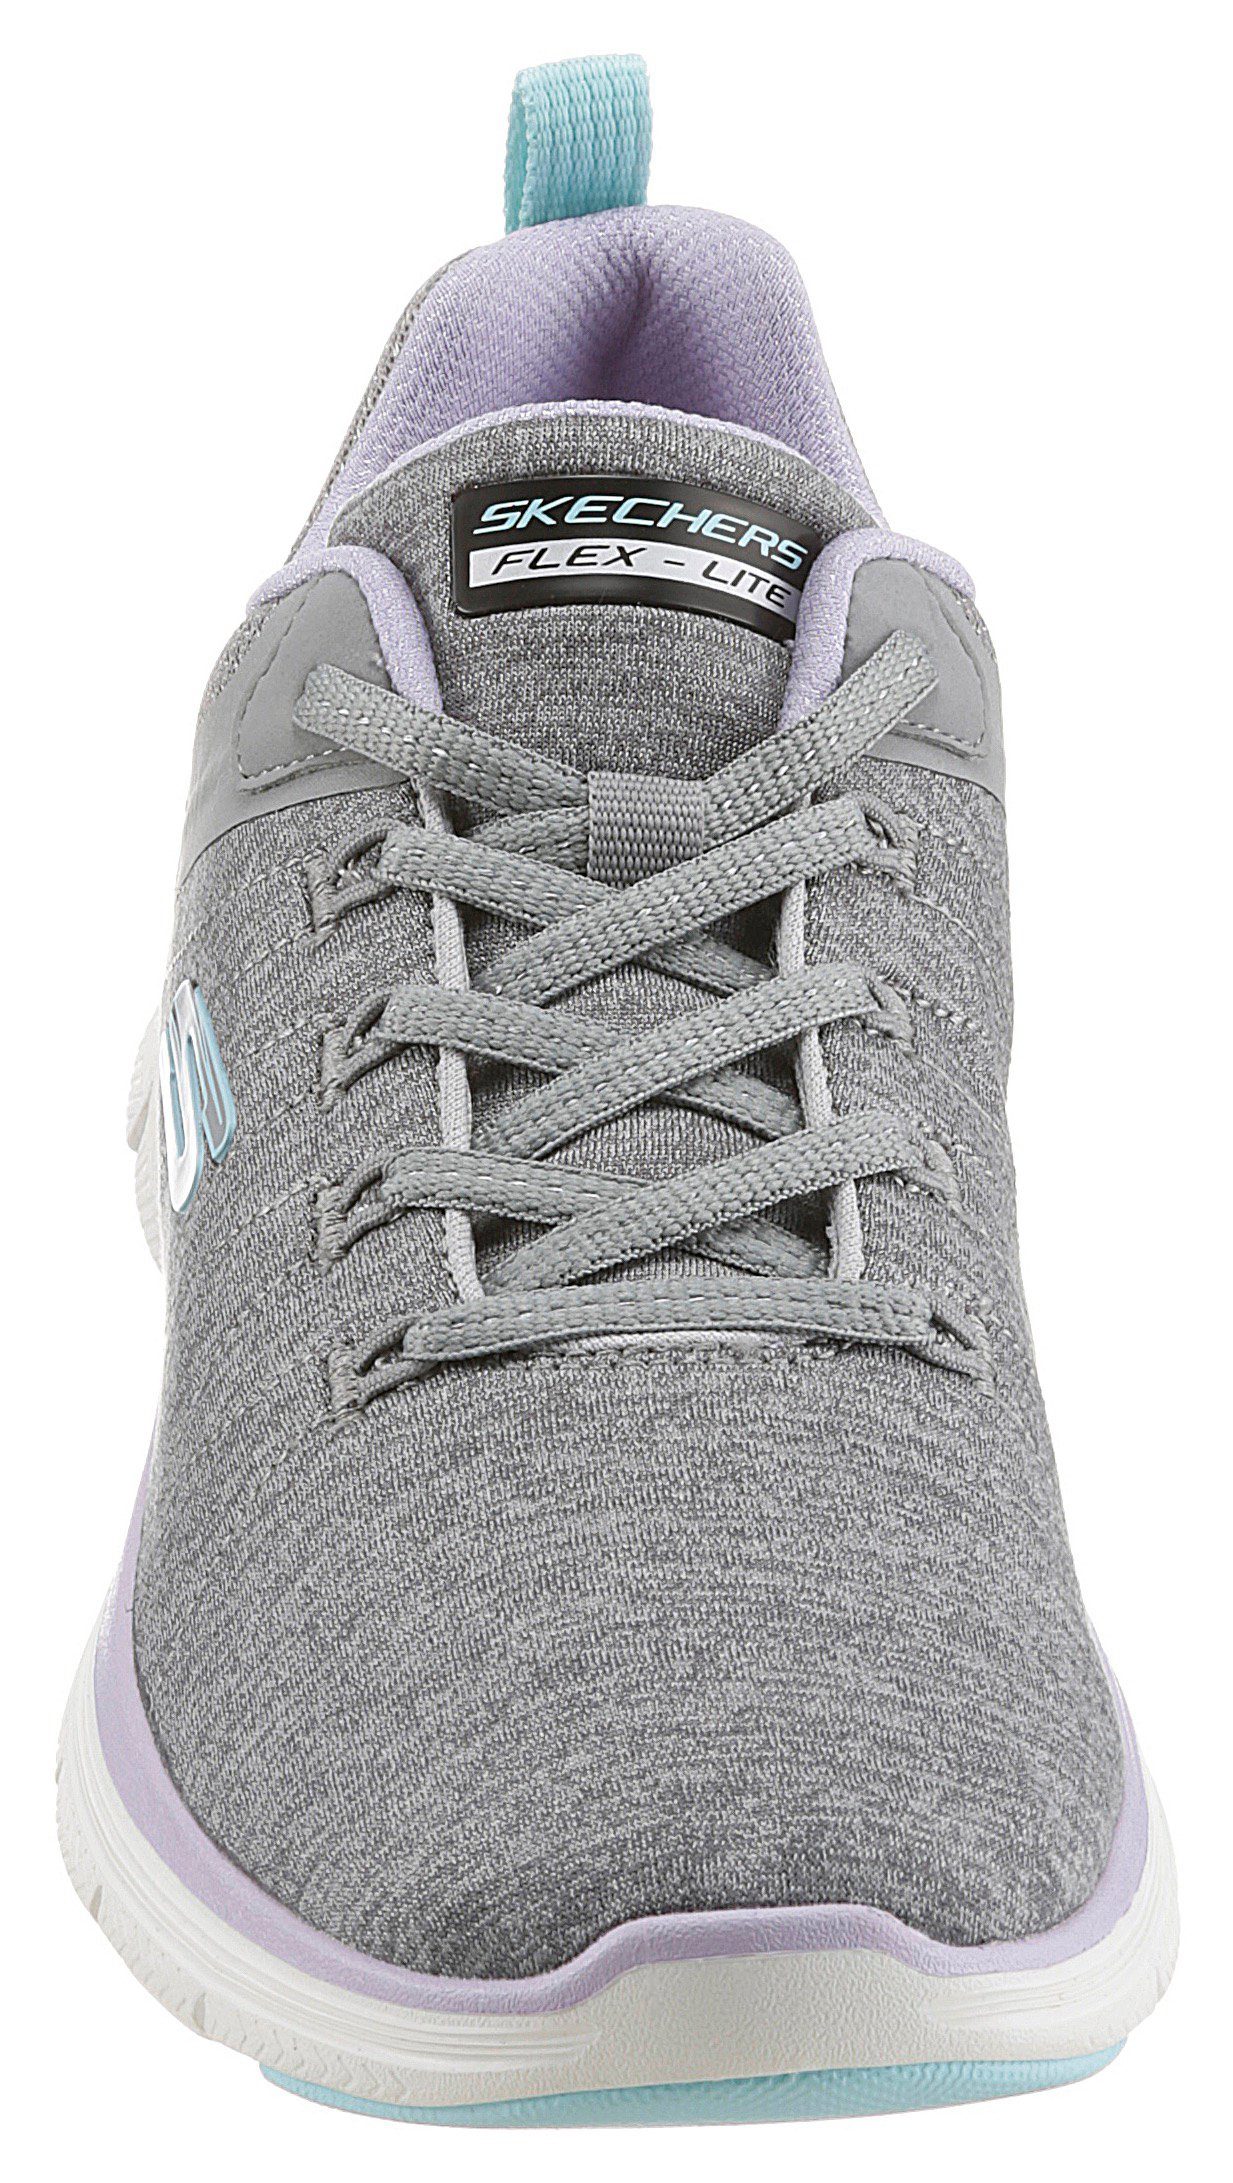 Skechers FLEX APPEAL - Maschinenwäsche Sneaker BRILLIANT für 4.0 grau-flieder-türkis geeignet VIEW